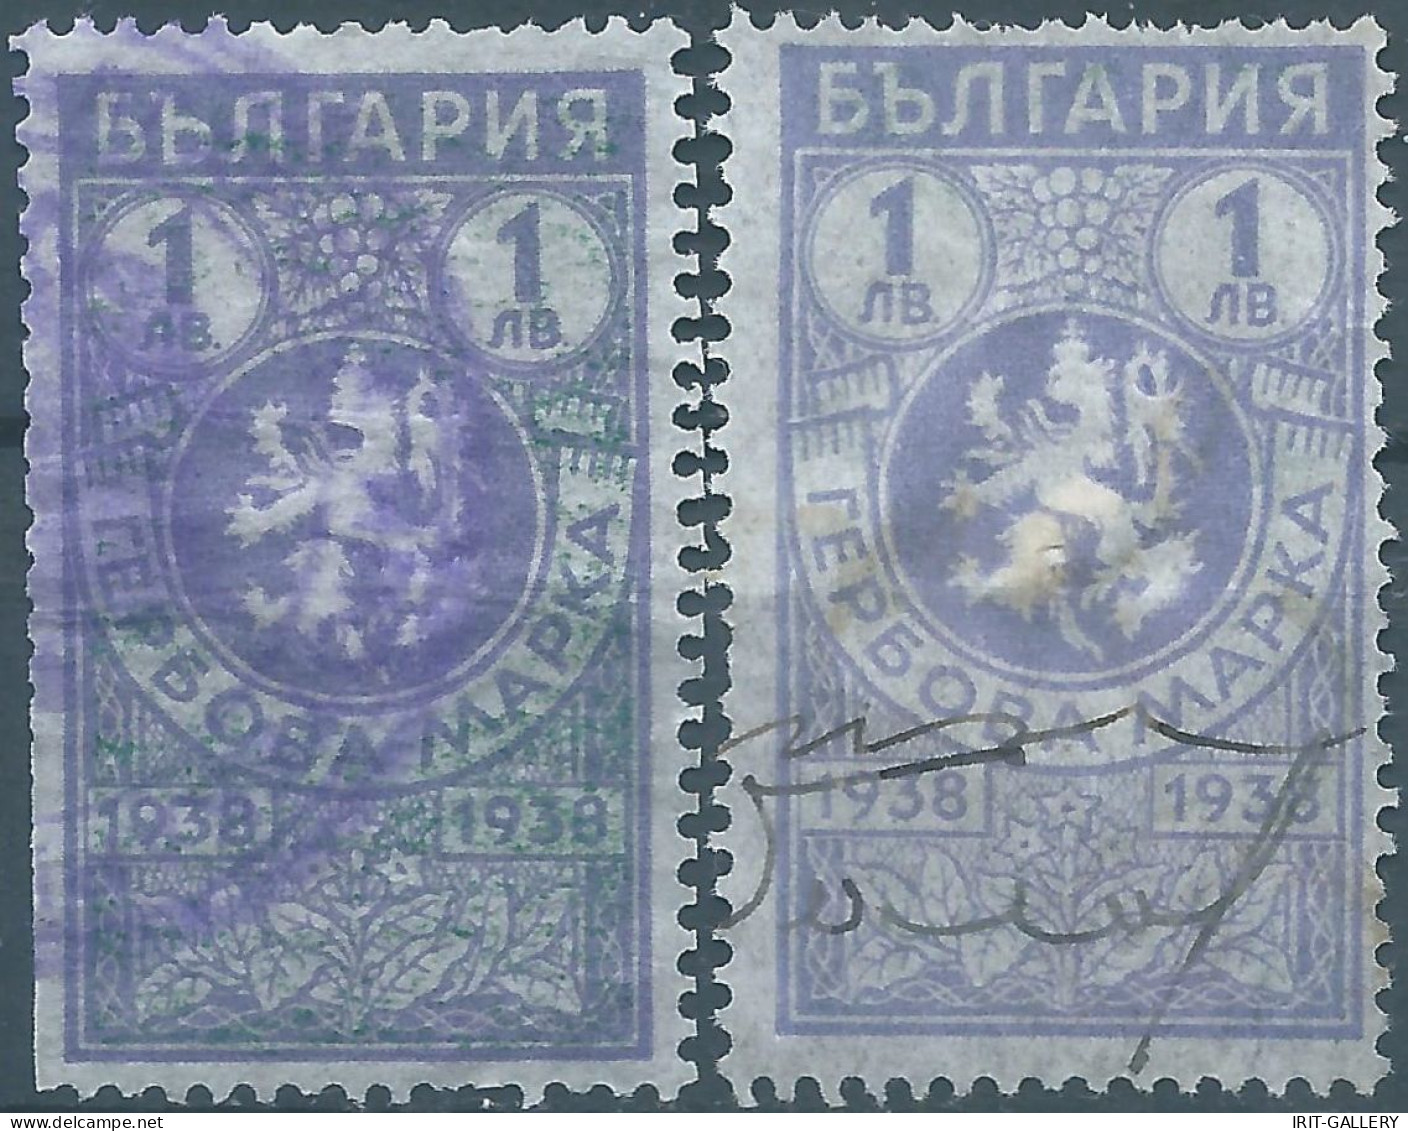 Bulgaria - Bulgarien - Bulgare,1938 Revenue Stamps Tax Fiscal,Used - Sellos De Servicio